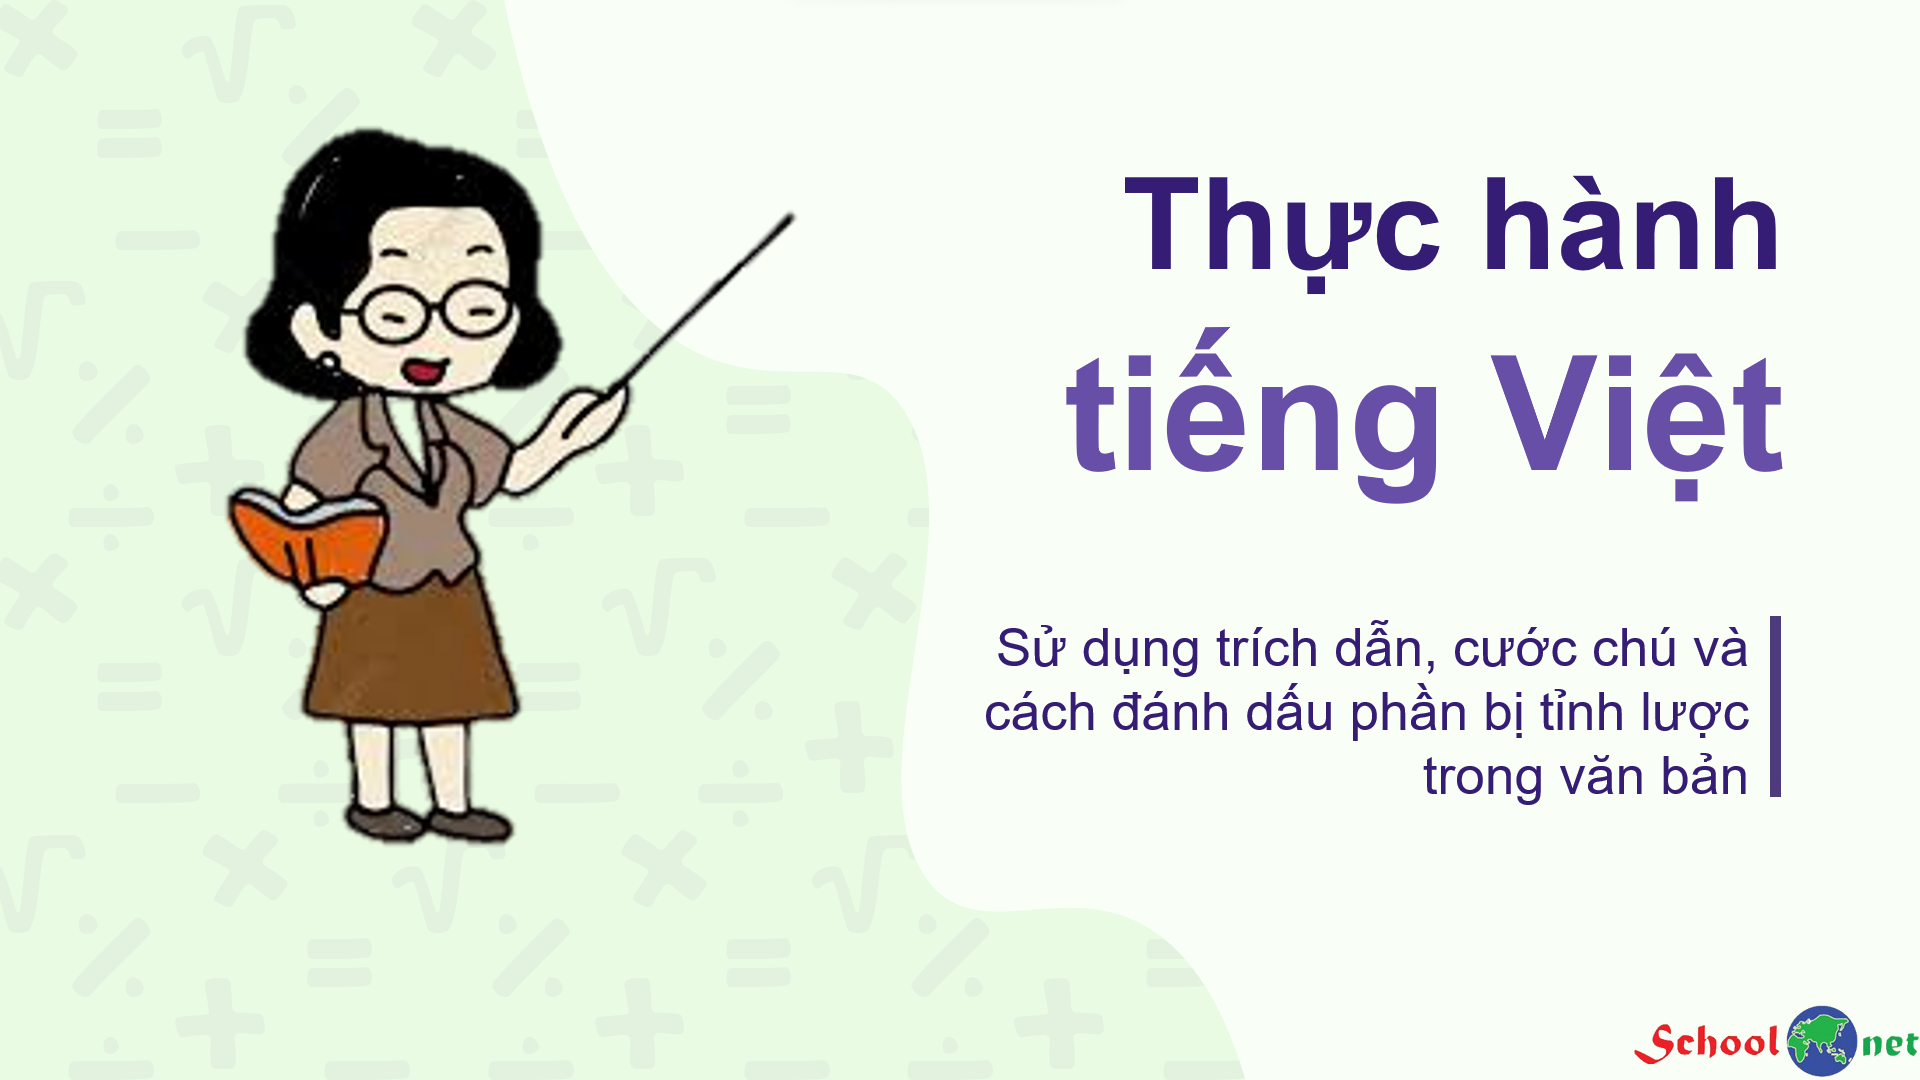 Bài 4: Thực hành tiếng Việt: Sử dụng trích dẫn, cước chú và cách đánh dấu phần bị tinh lược trong văn bản - Bộ sách Kết nối tri thức với cuộc sống